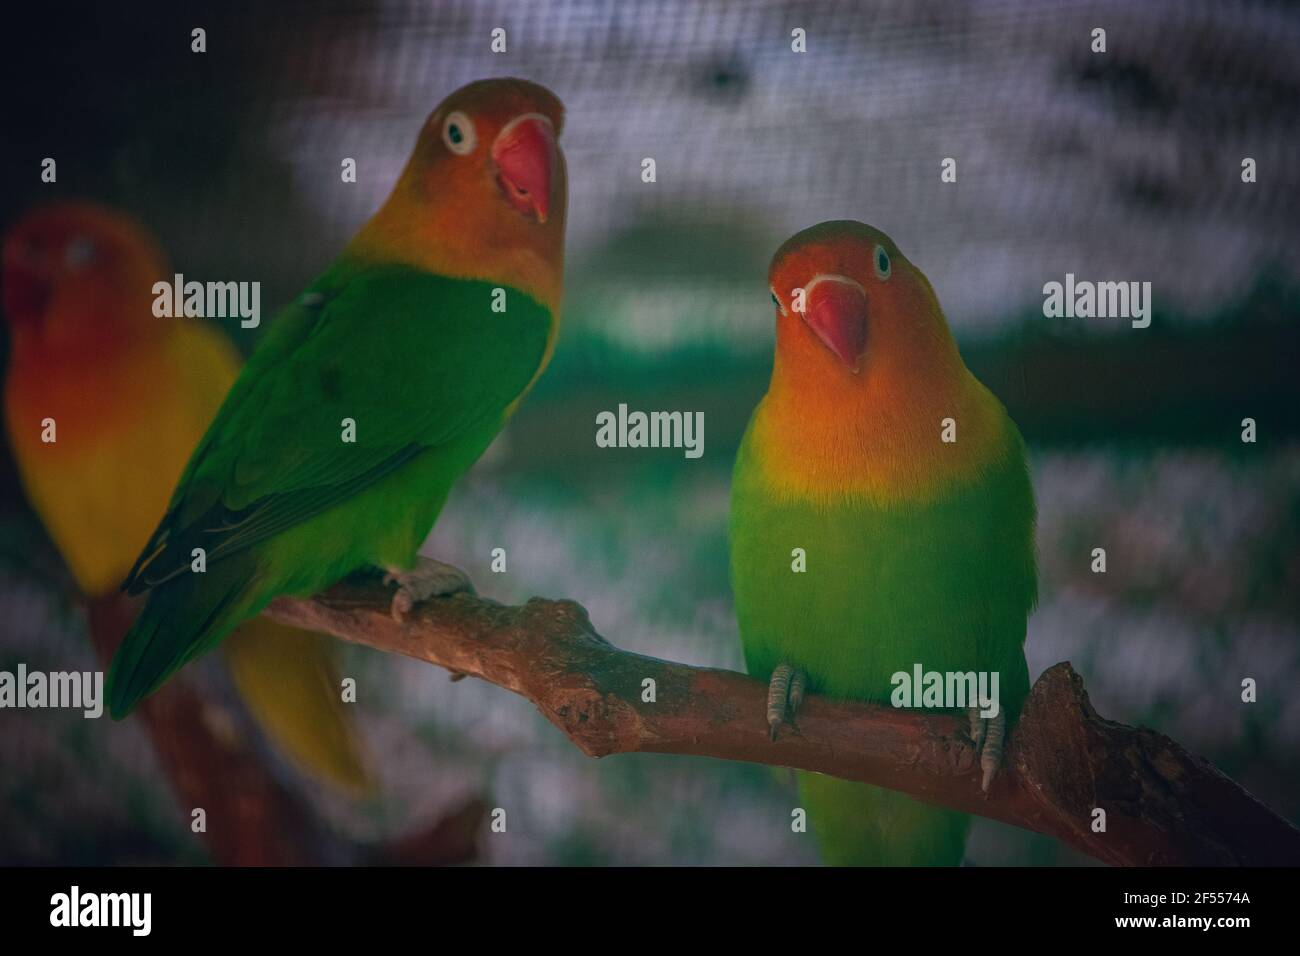 Deux oiseaux de la paire rouge-vert Parrot assis sur une branche d'un arbre dans un zoo. Banque D'Images